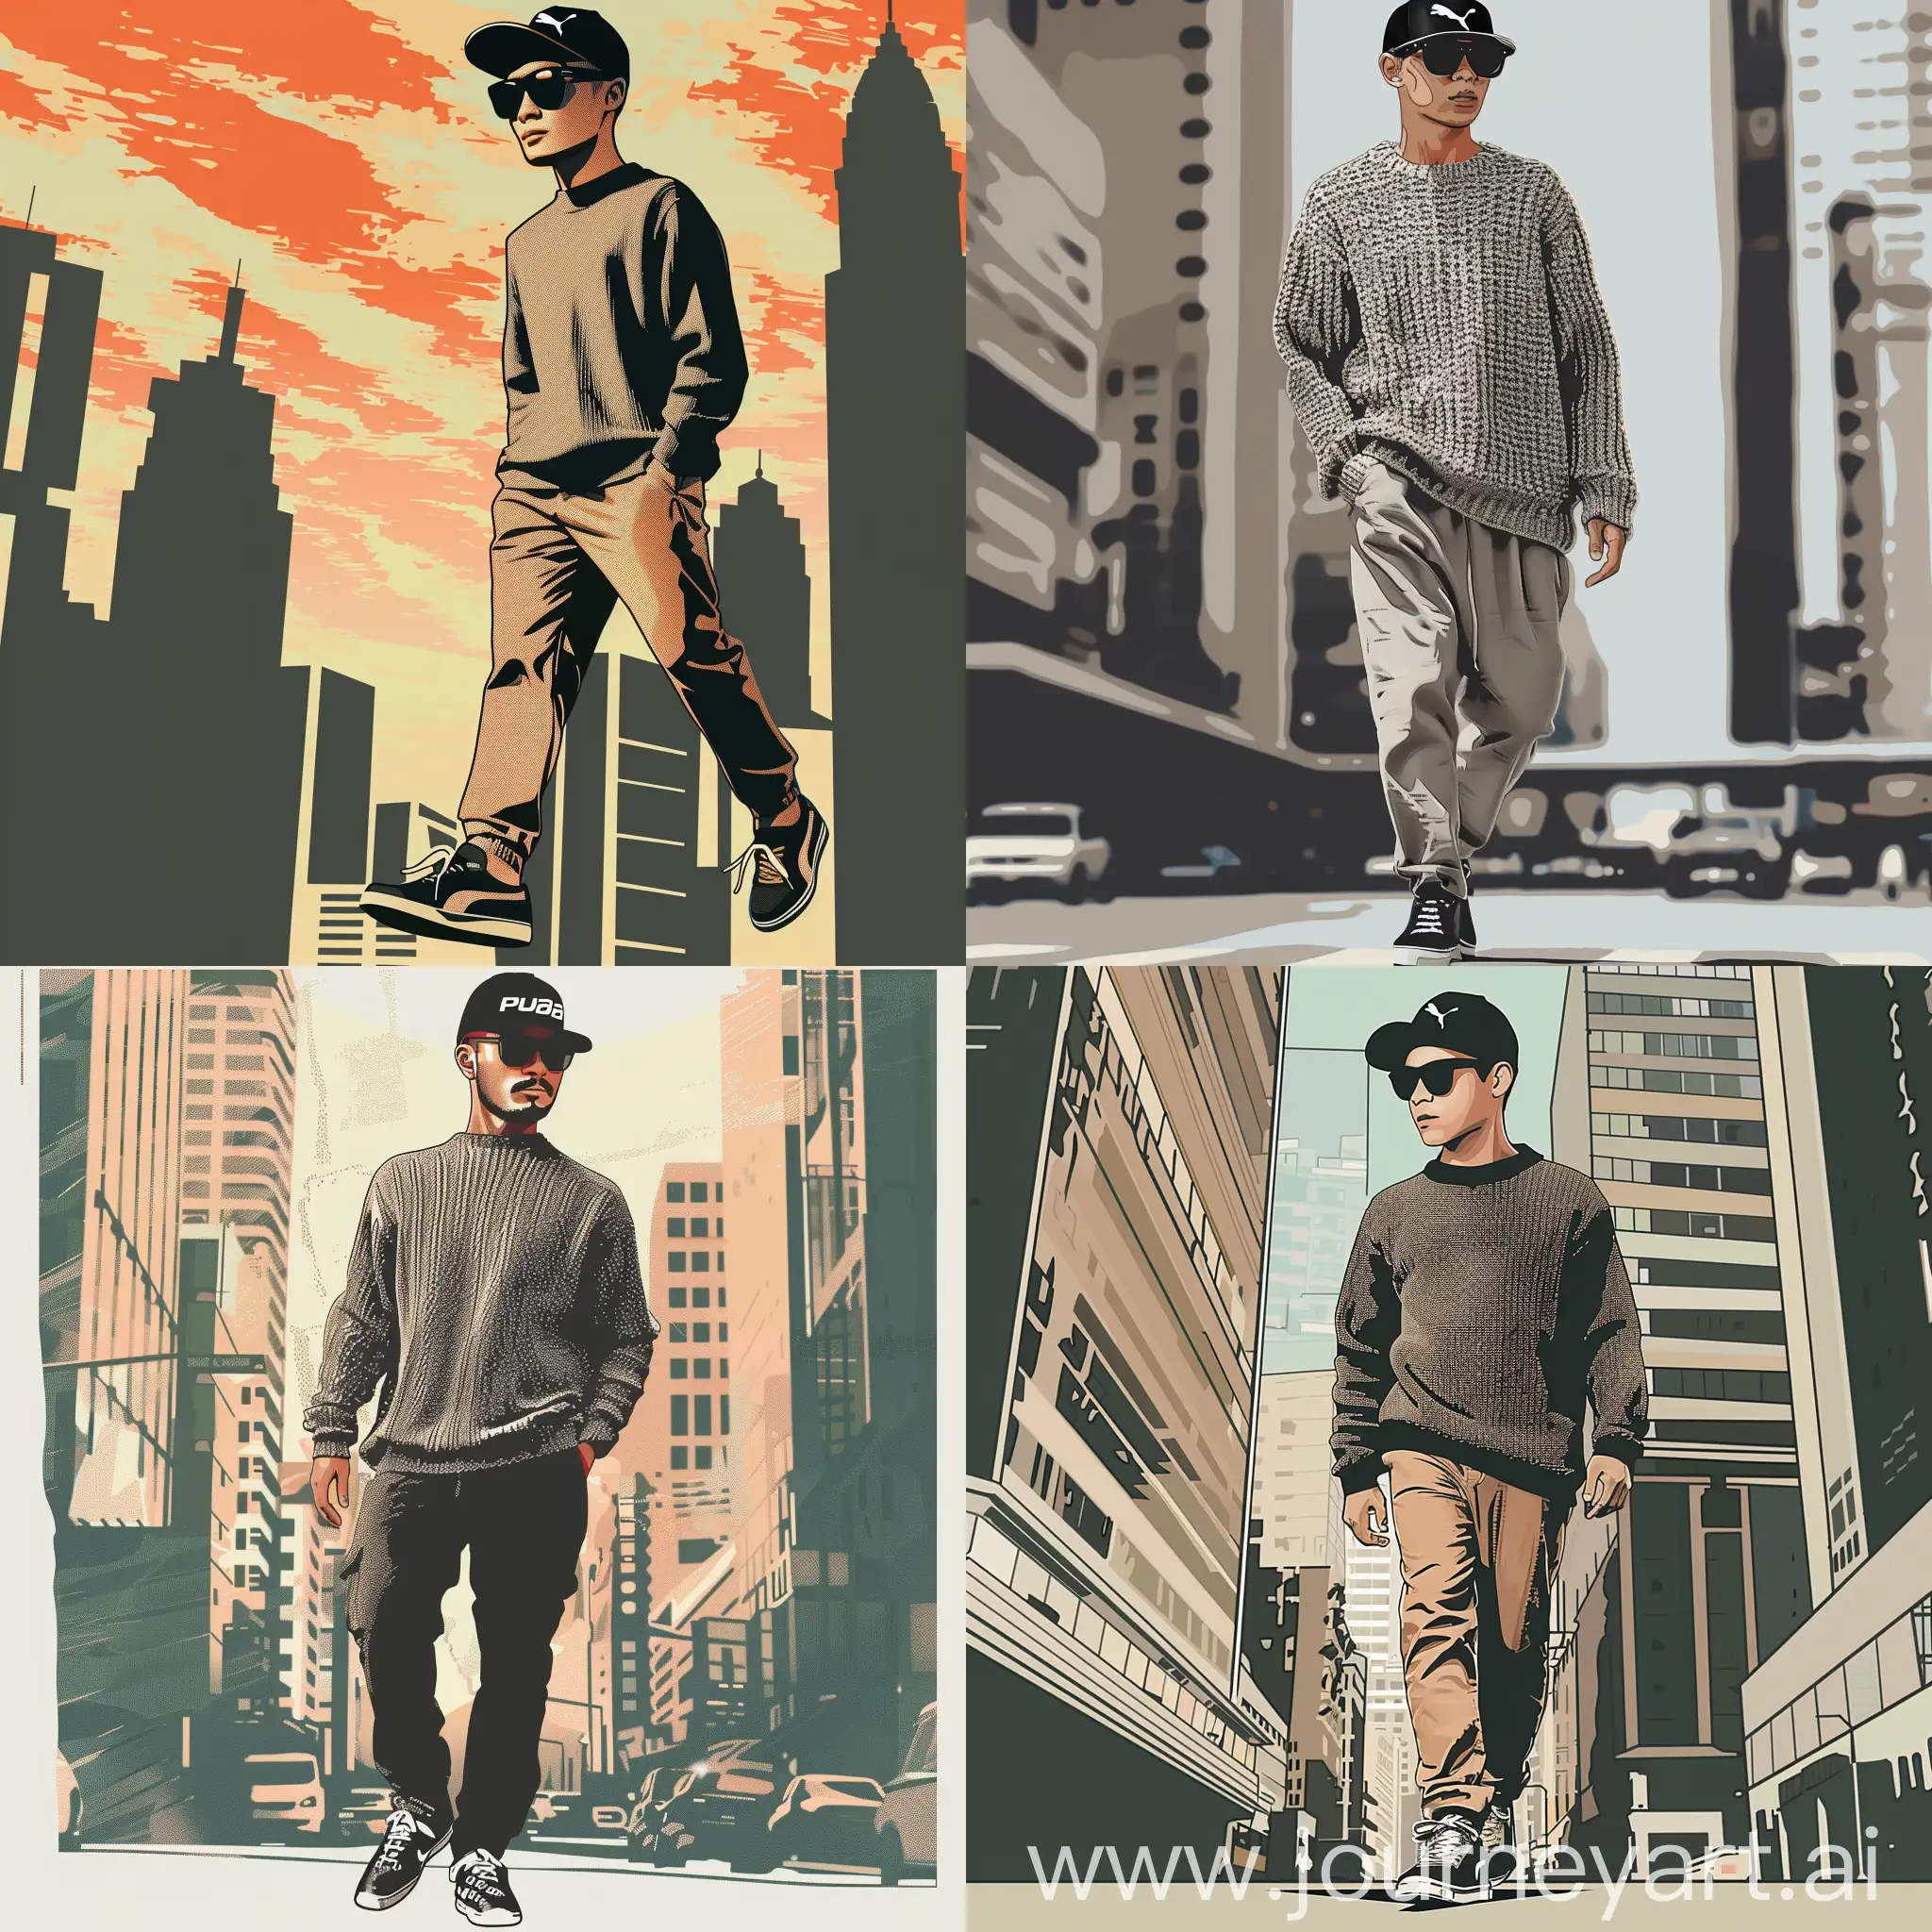  Buat gambar seni pop seorang pria tampan Indonesia berumur 21 tahun,yang mengenakan kacamata hitam,topi puma,sweeter,celana panjang dan sepatu sneakers sedang berjalan,di tengah kota